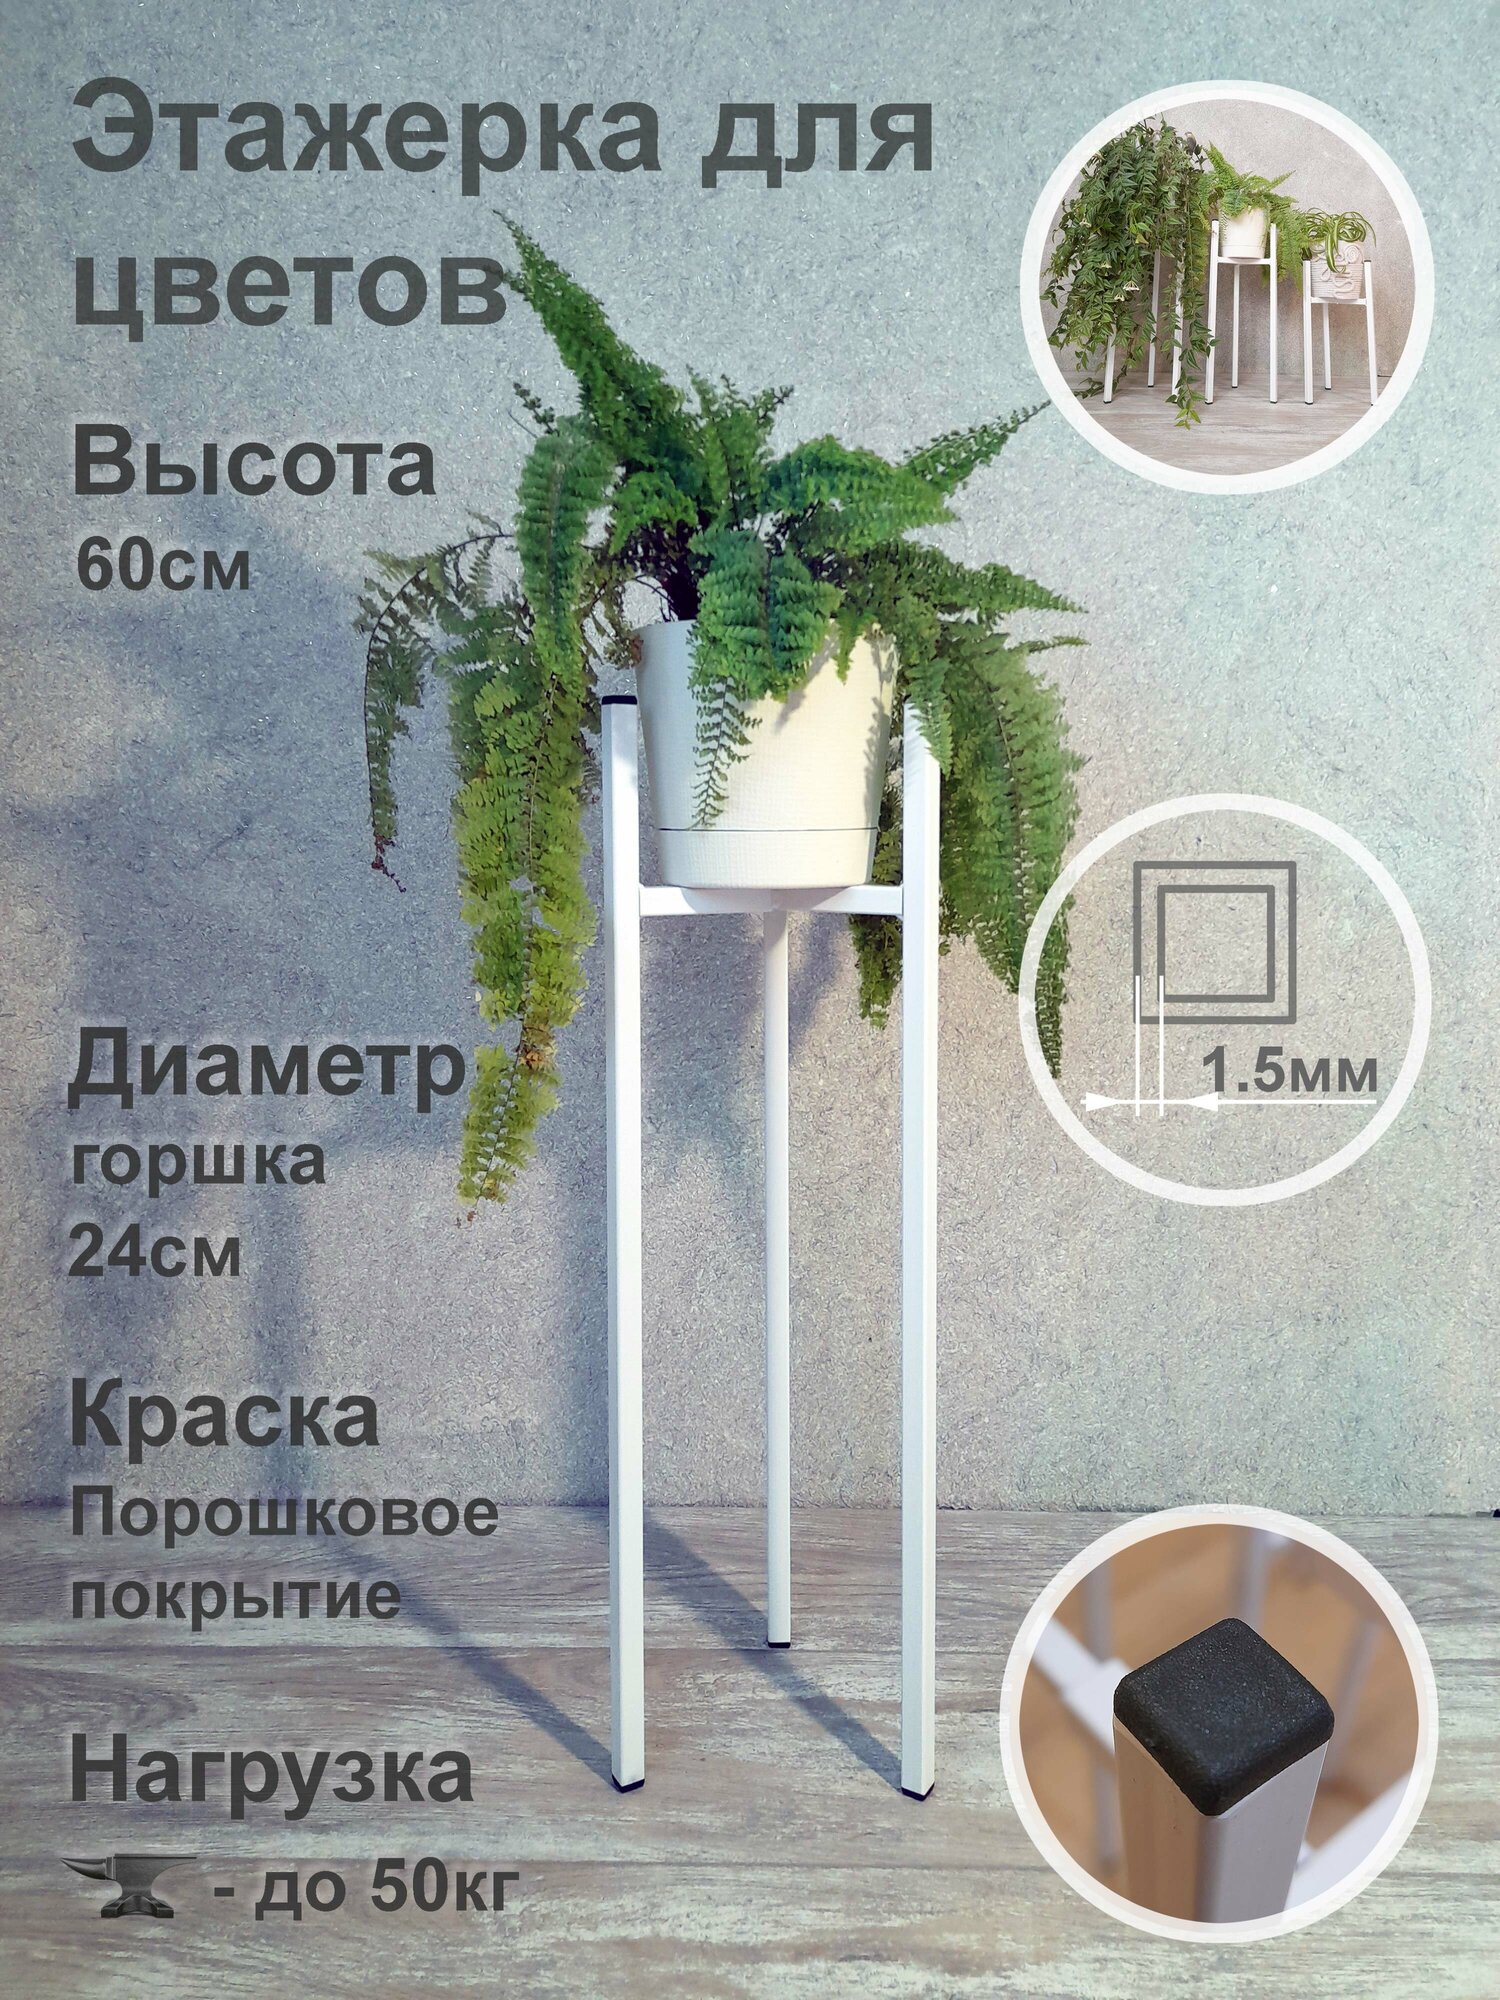 Металлическая стойка - подставка Лофт высотой 60см этажерка для цветов и растений (Диаметр кашпо до 24см) белая